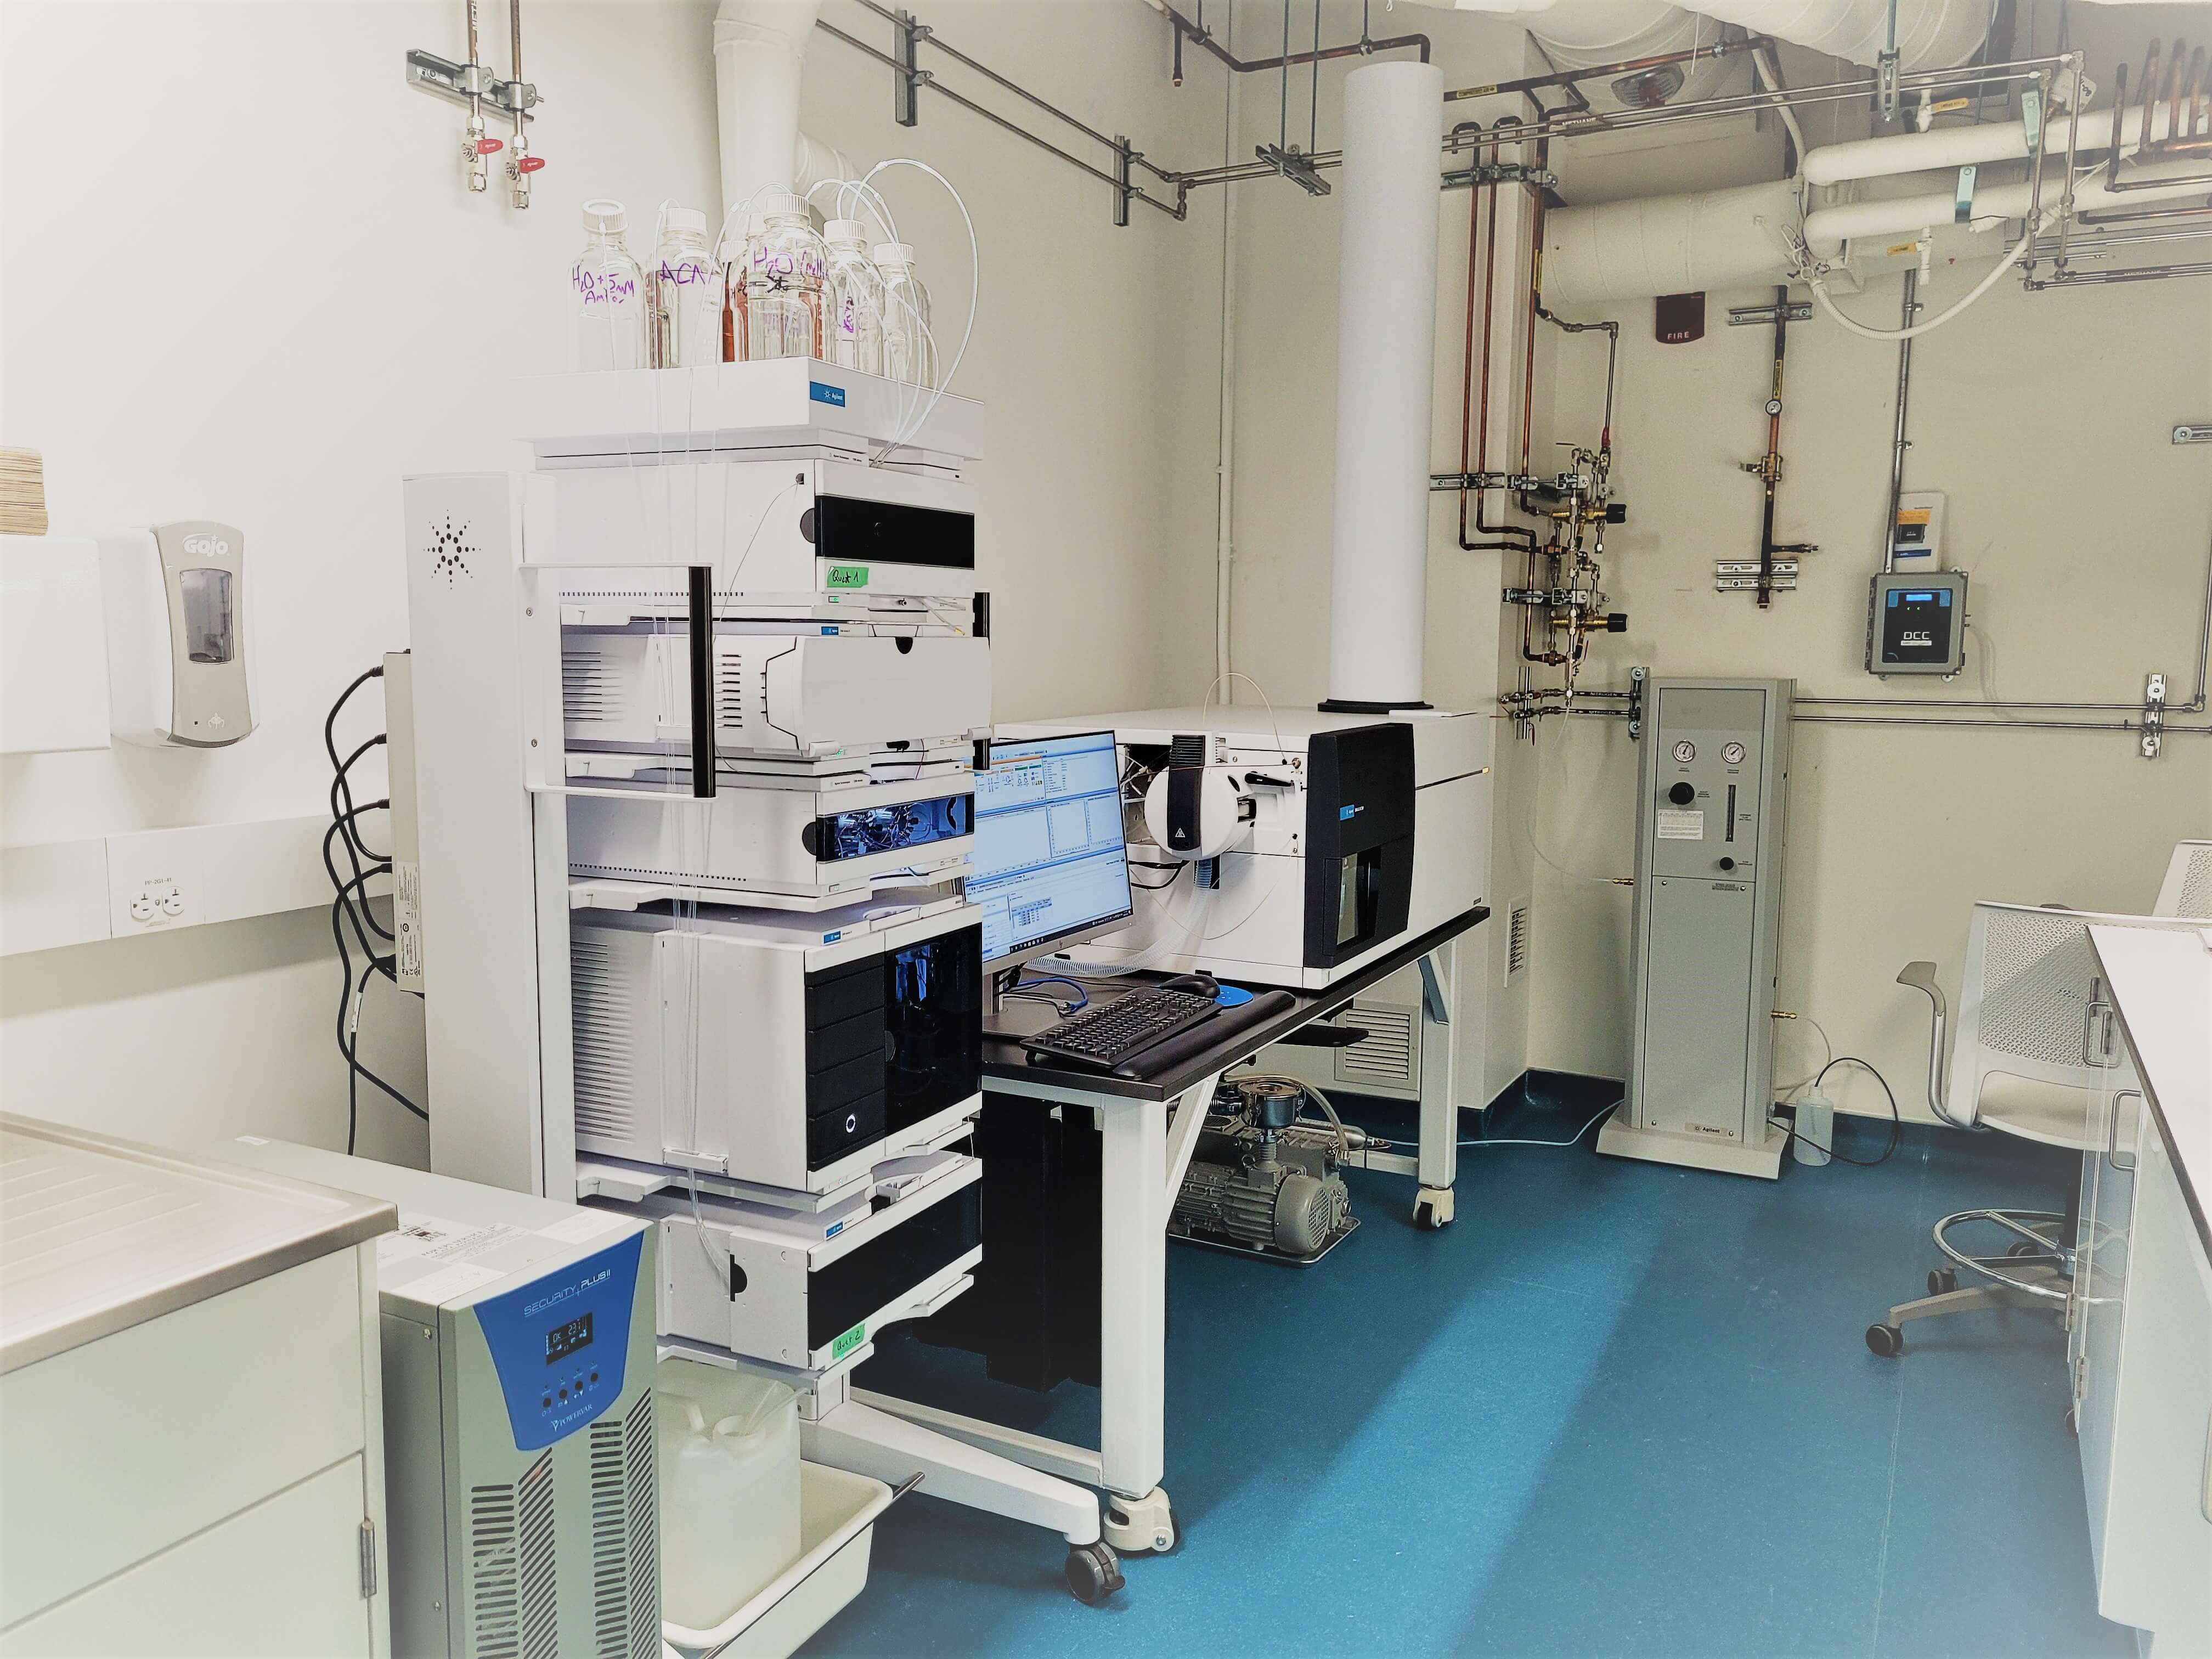 Interior of EC lab with lab equipment